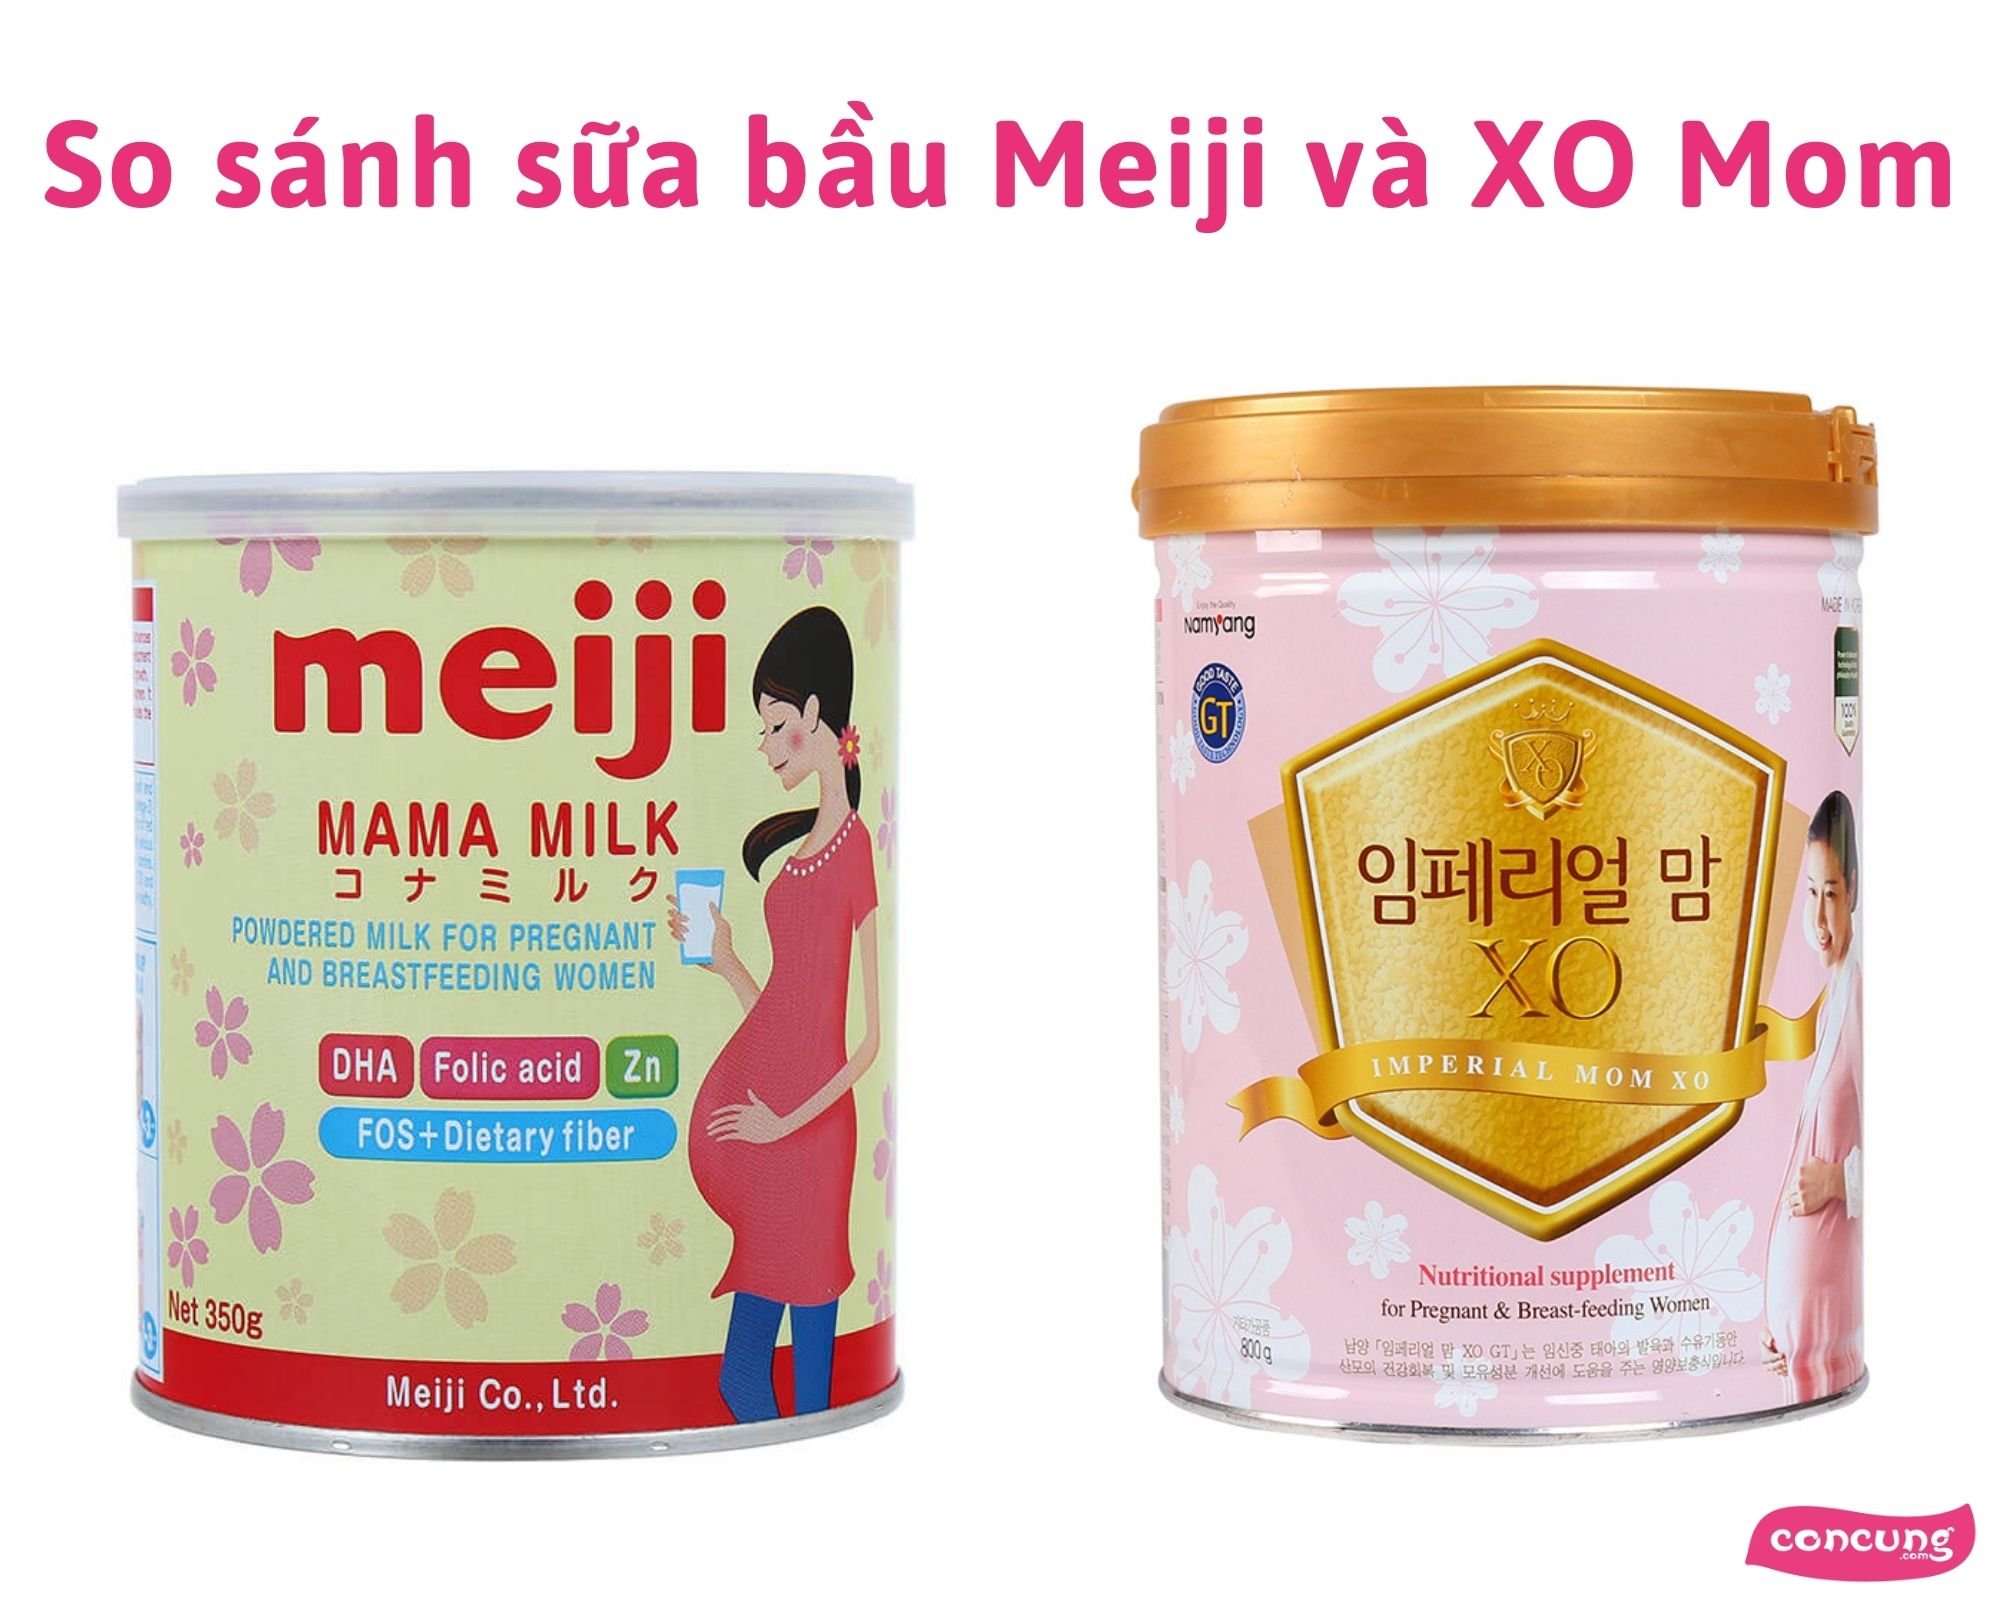 So sánh sữa bầu Meiji Mama và XO, chọn loại nào tốt hơn?